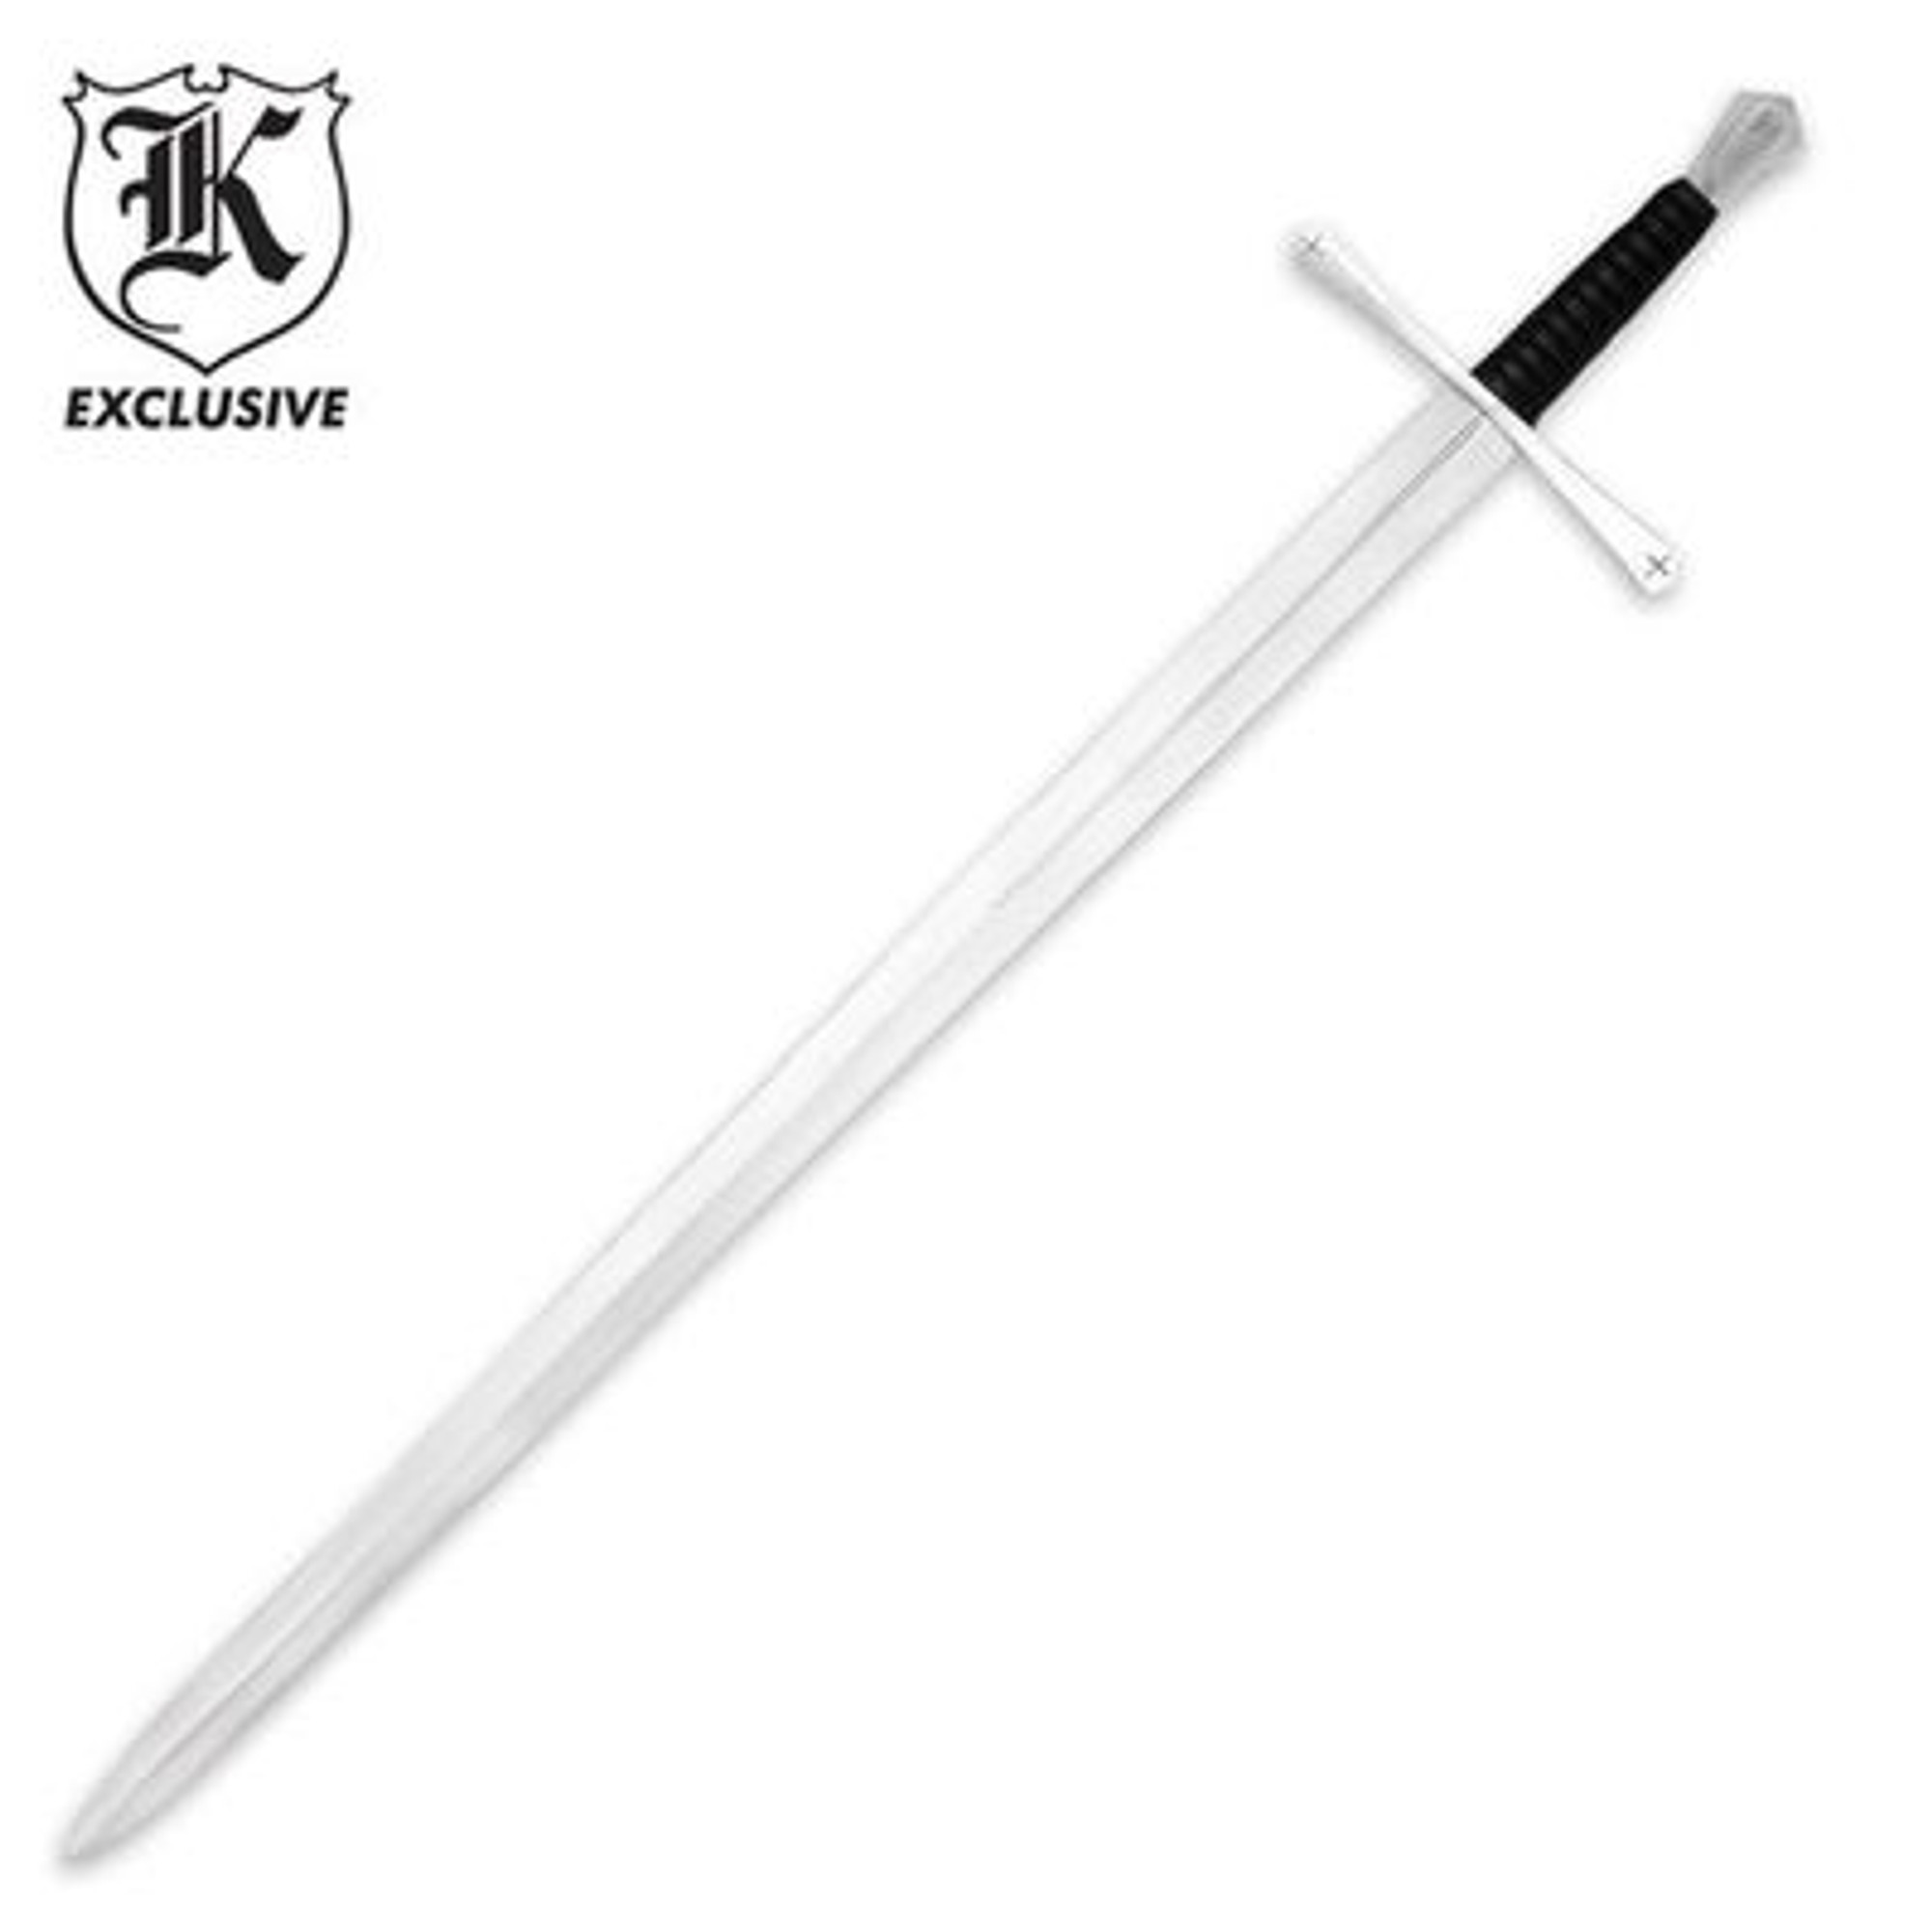 Tewkesbury Medieval Sword